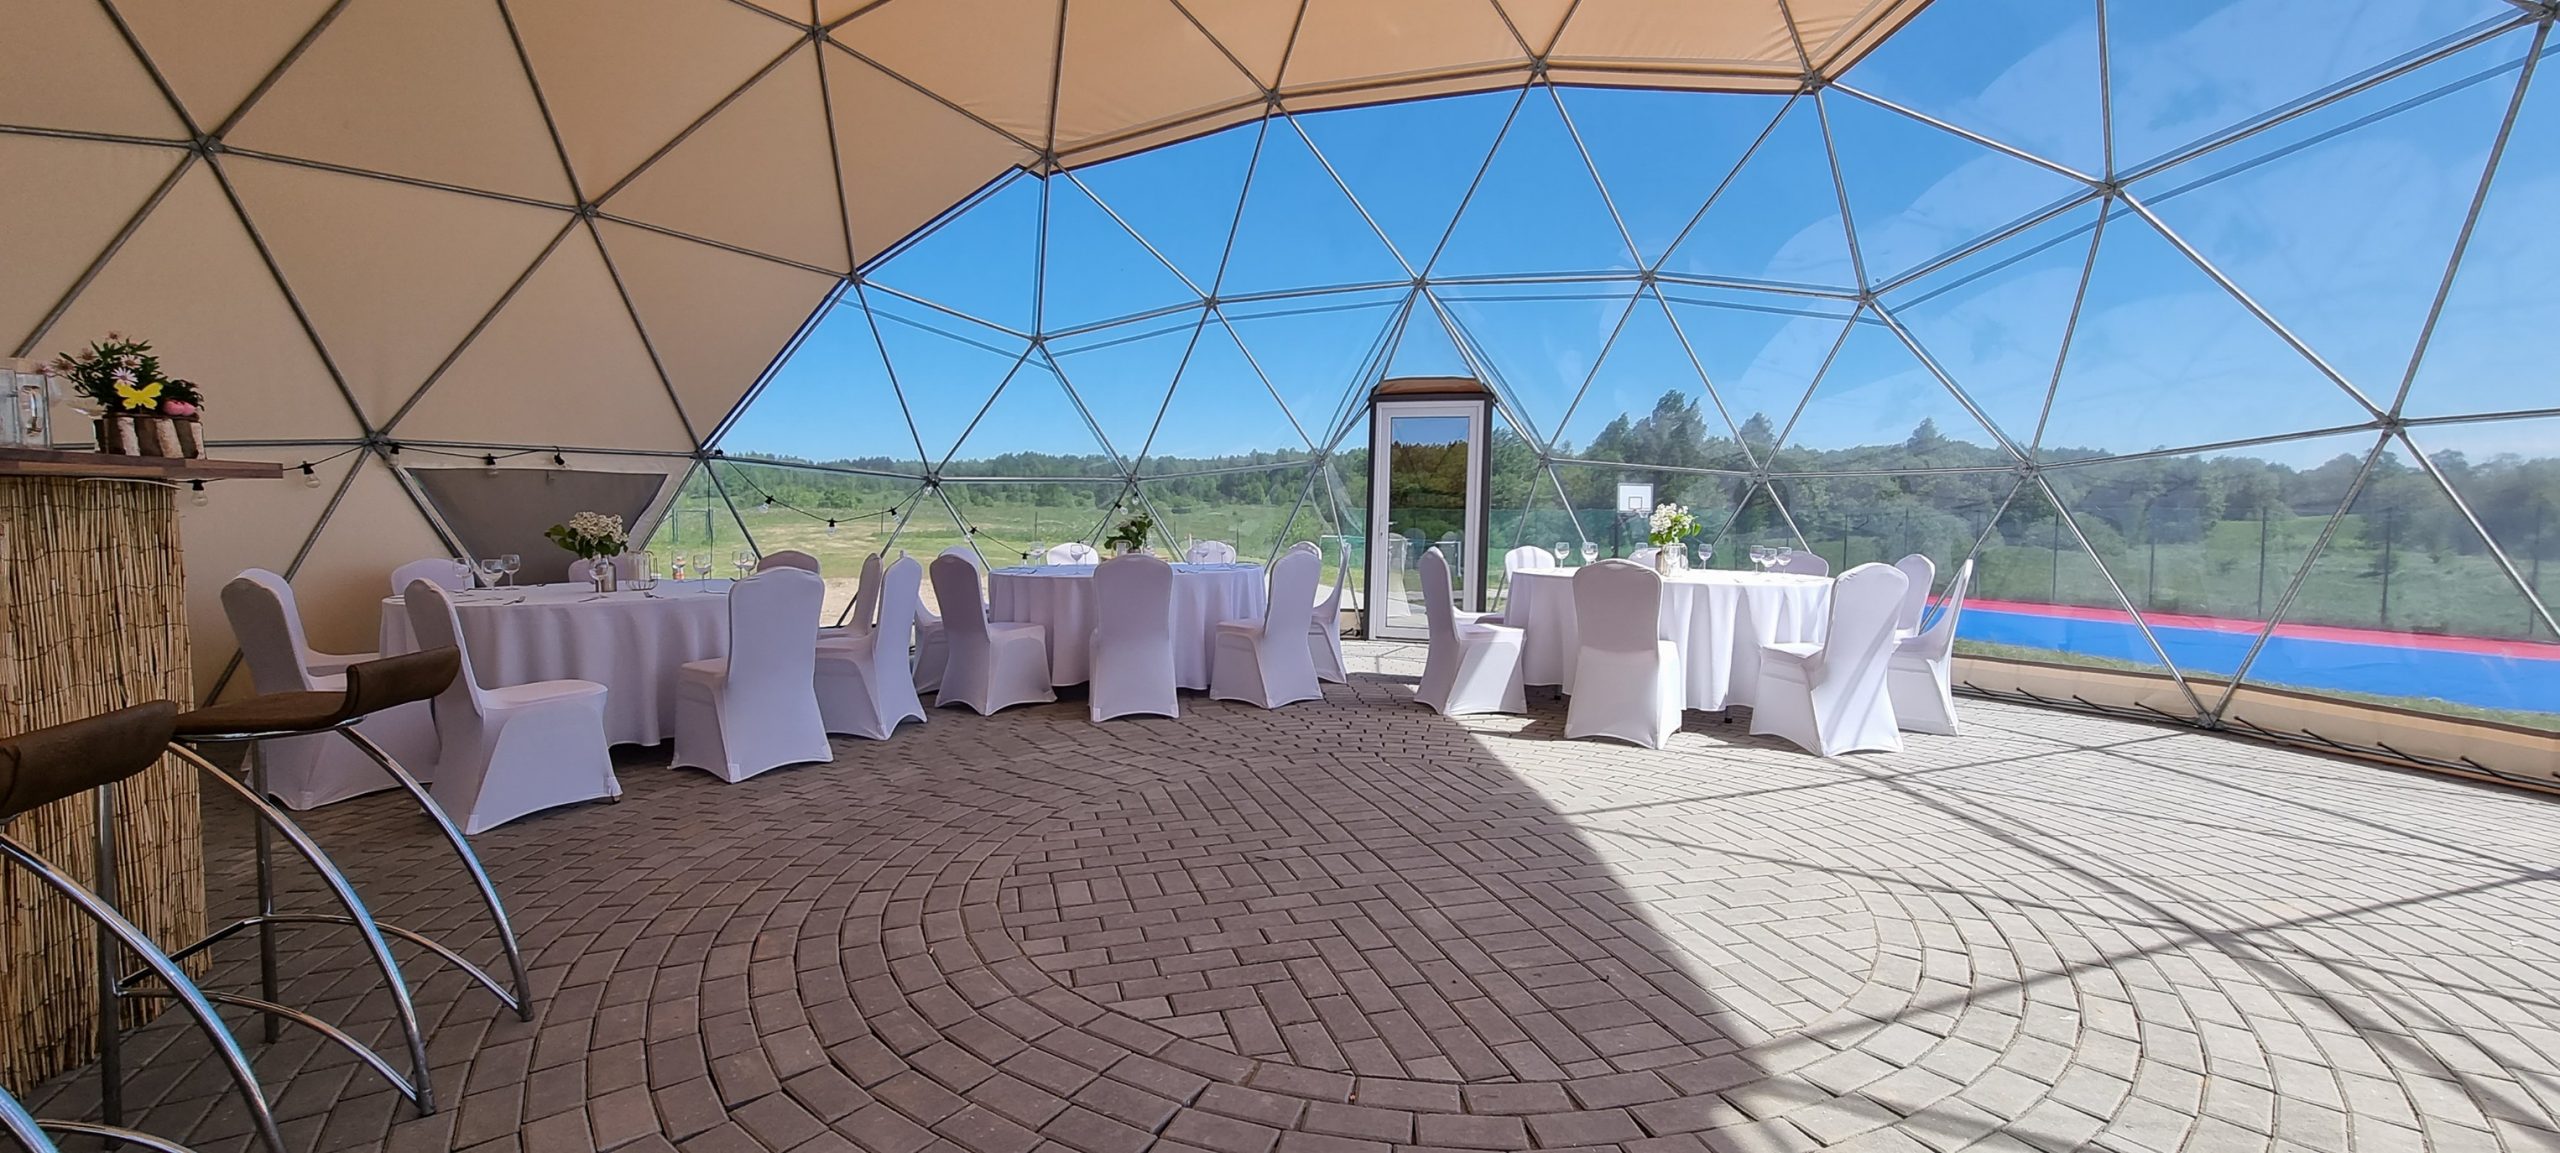 95m2 Wedding Event Dome Ø11m | MEDA HOUSE, Lithuania